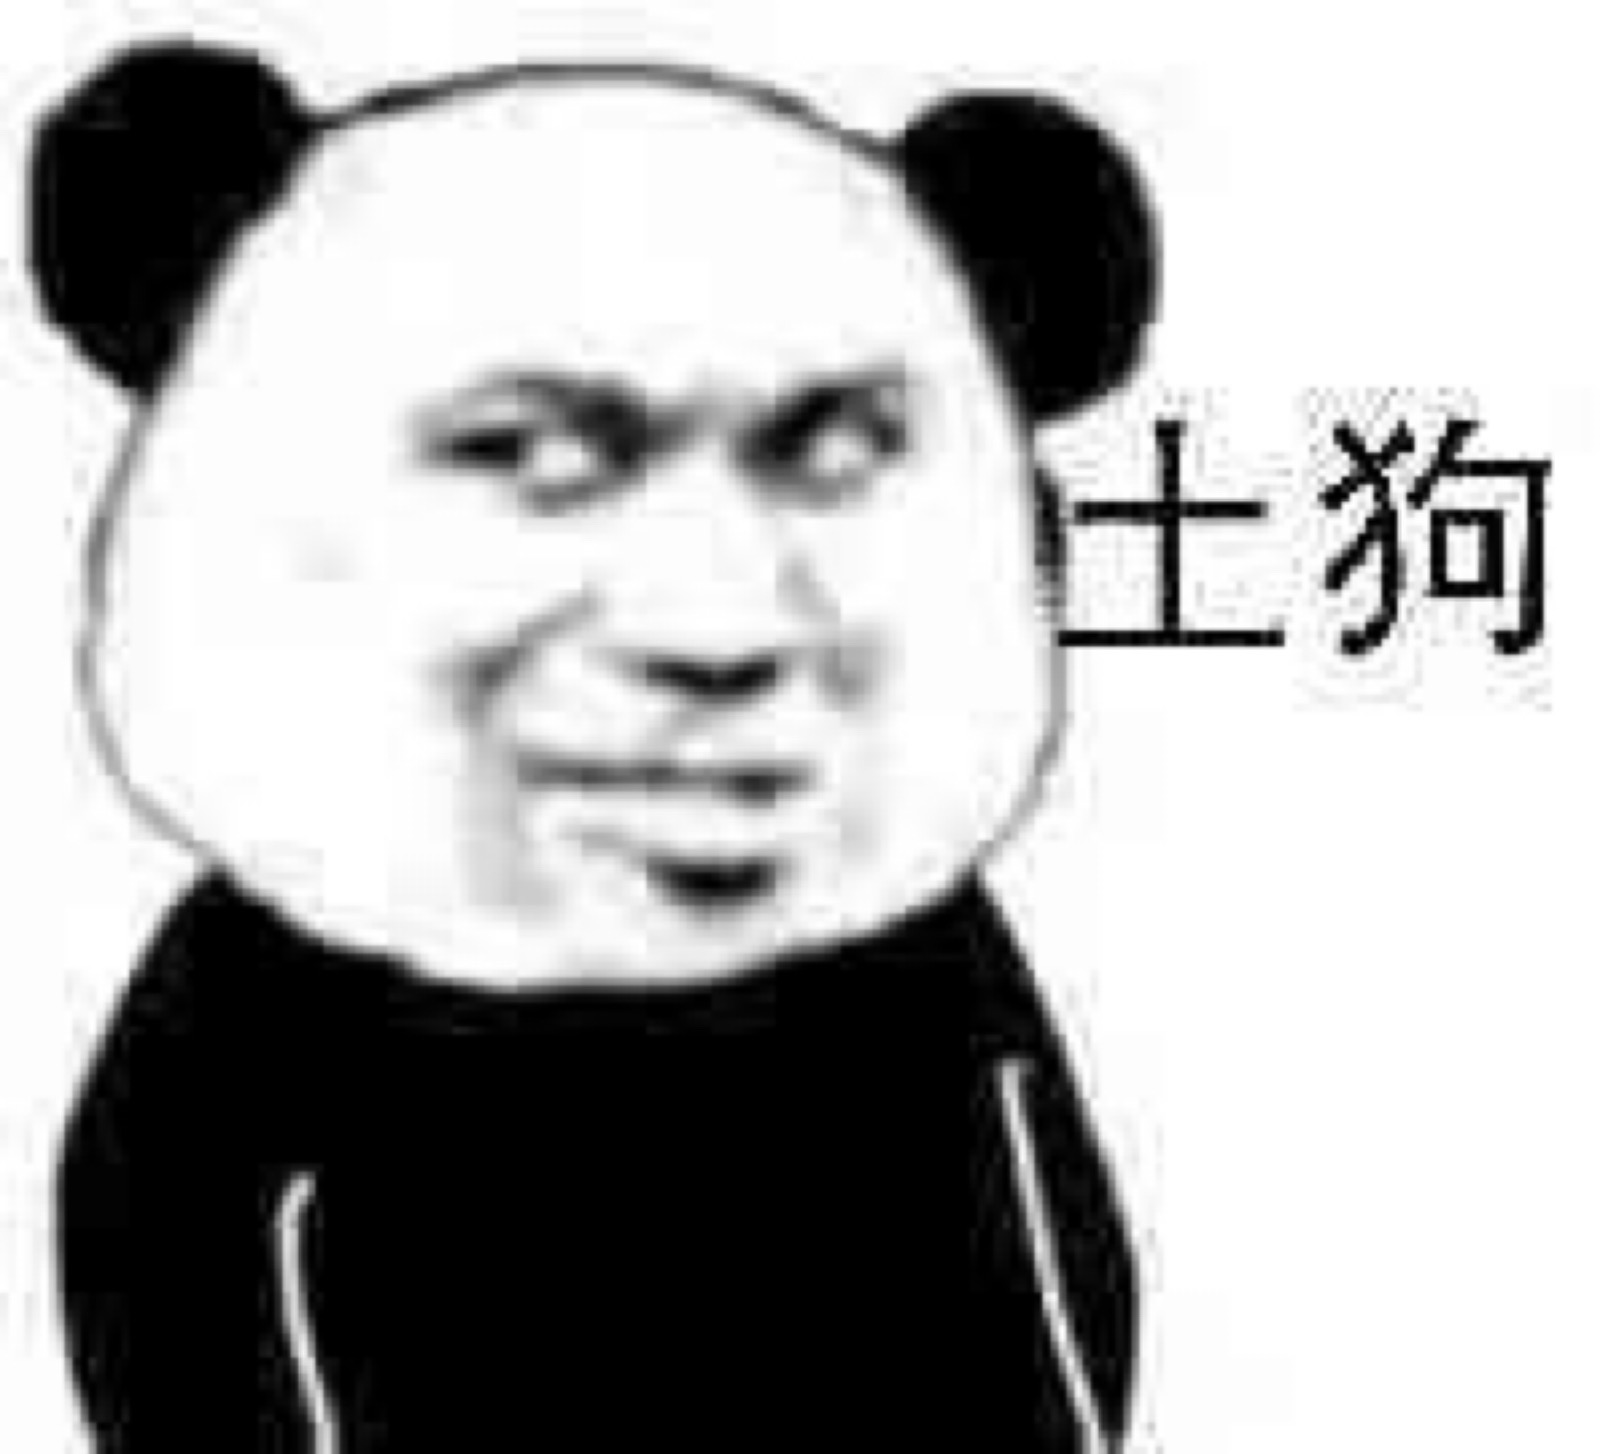 【四川广播电视台】刨根问底：大熊猫为啥要长黑眼圈？【2022-7-22】 _www.isenlin.cn